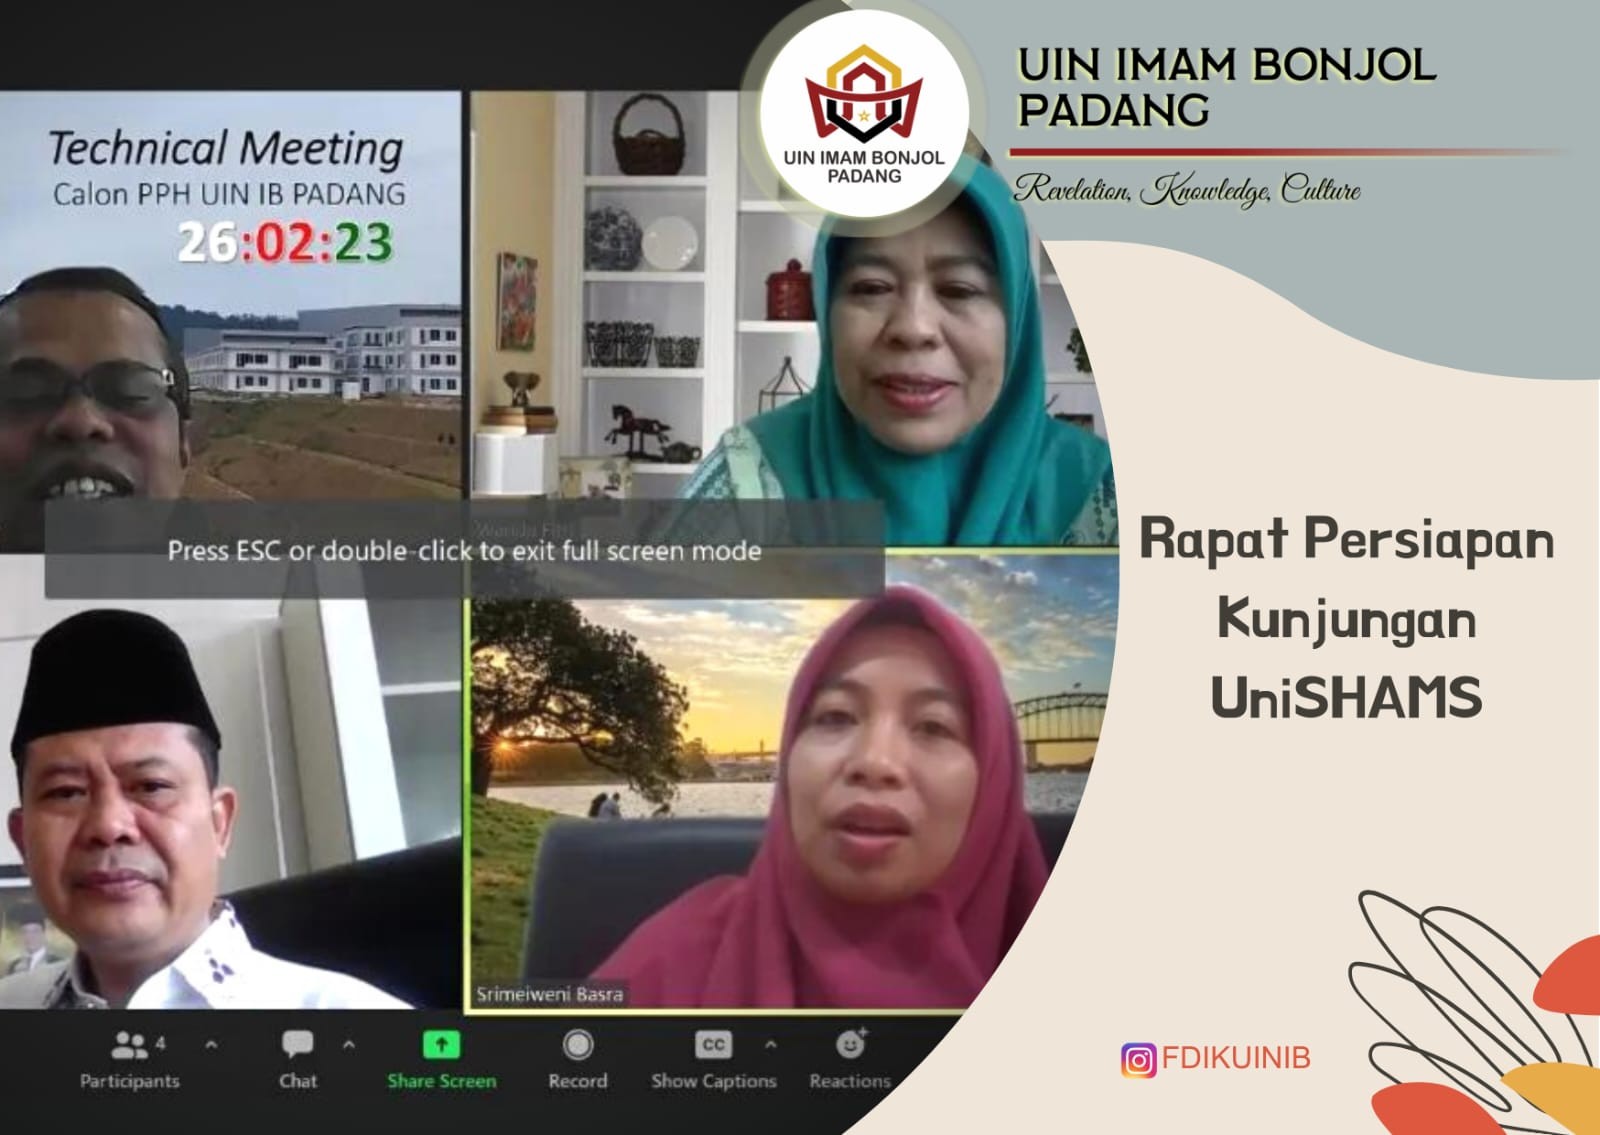 Rapat Persiapan Penyambutan tamu dari UniSHAMS Malaysia